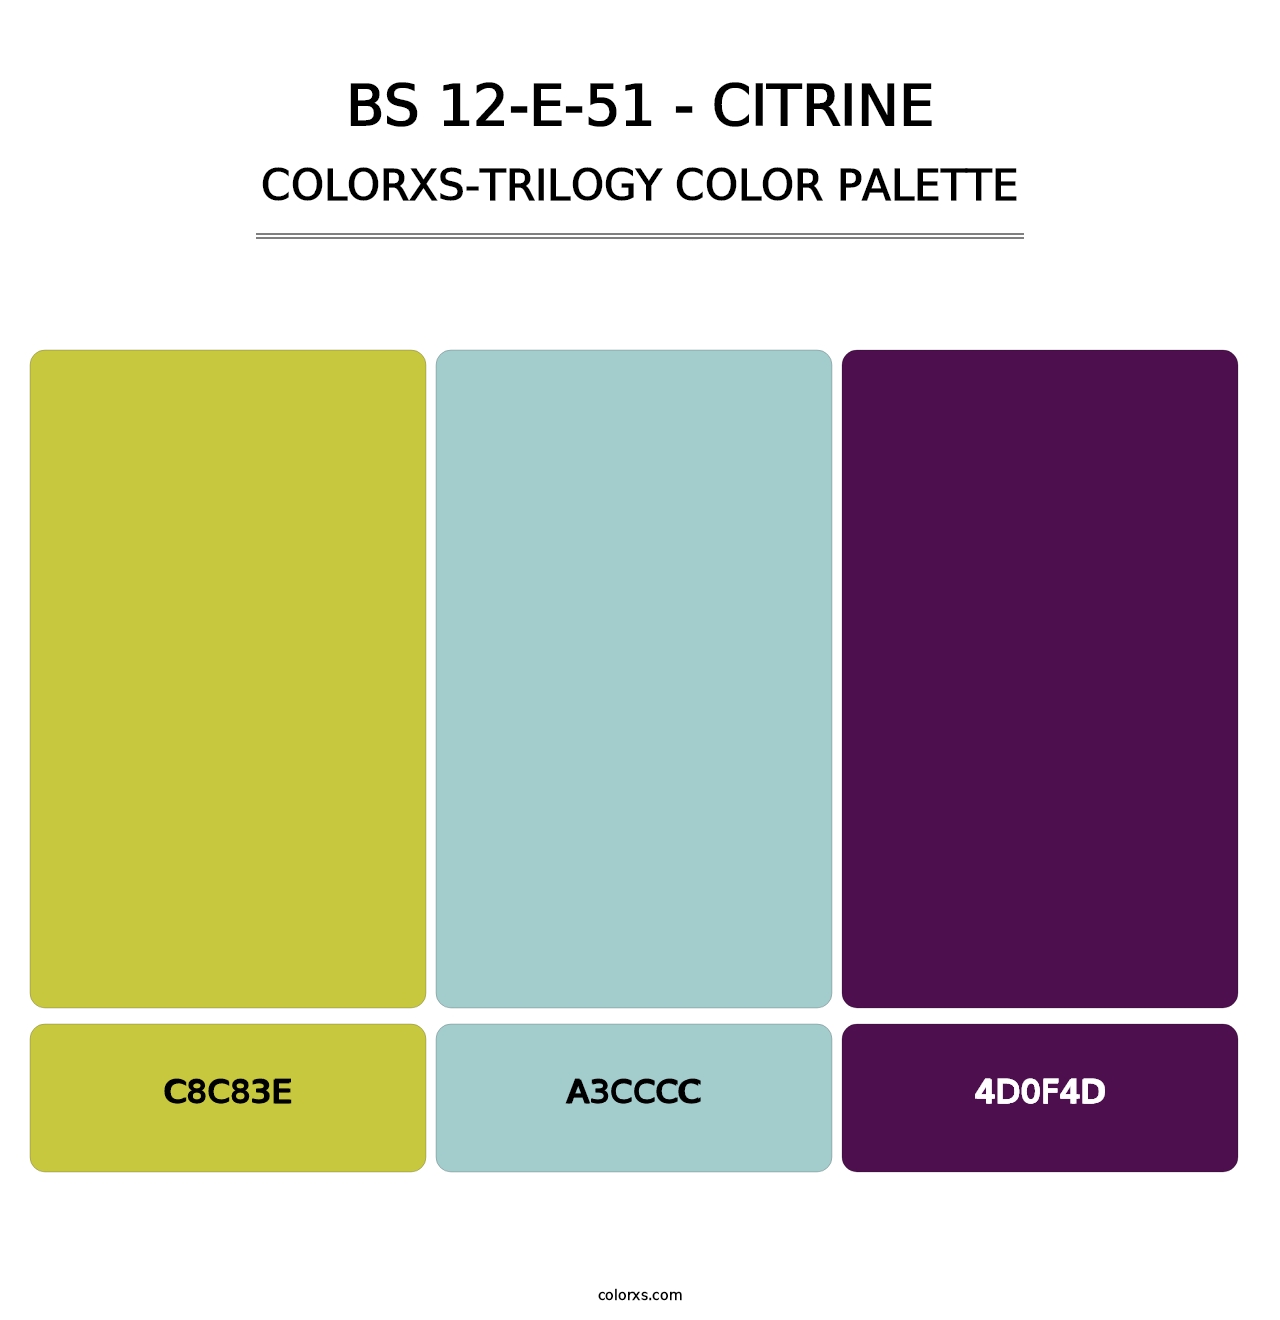 BS 12-E-51 - Citrine - Colorxs Trilogy Palette